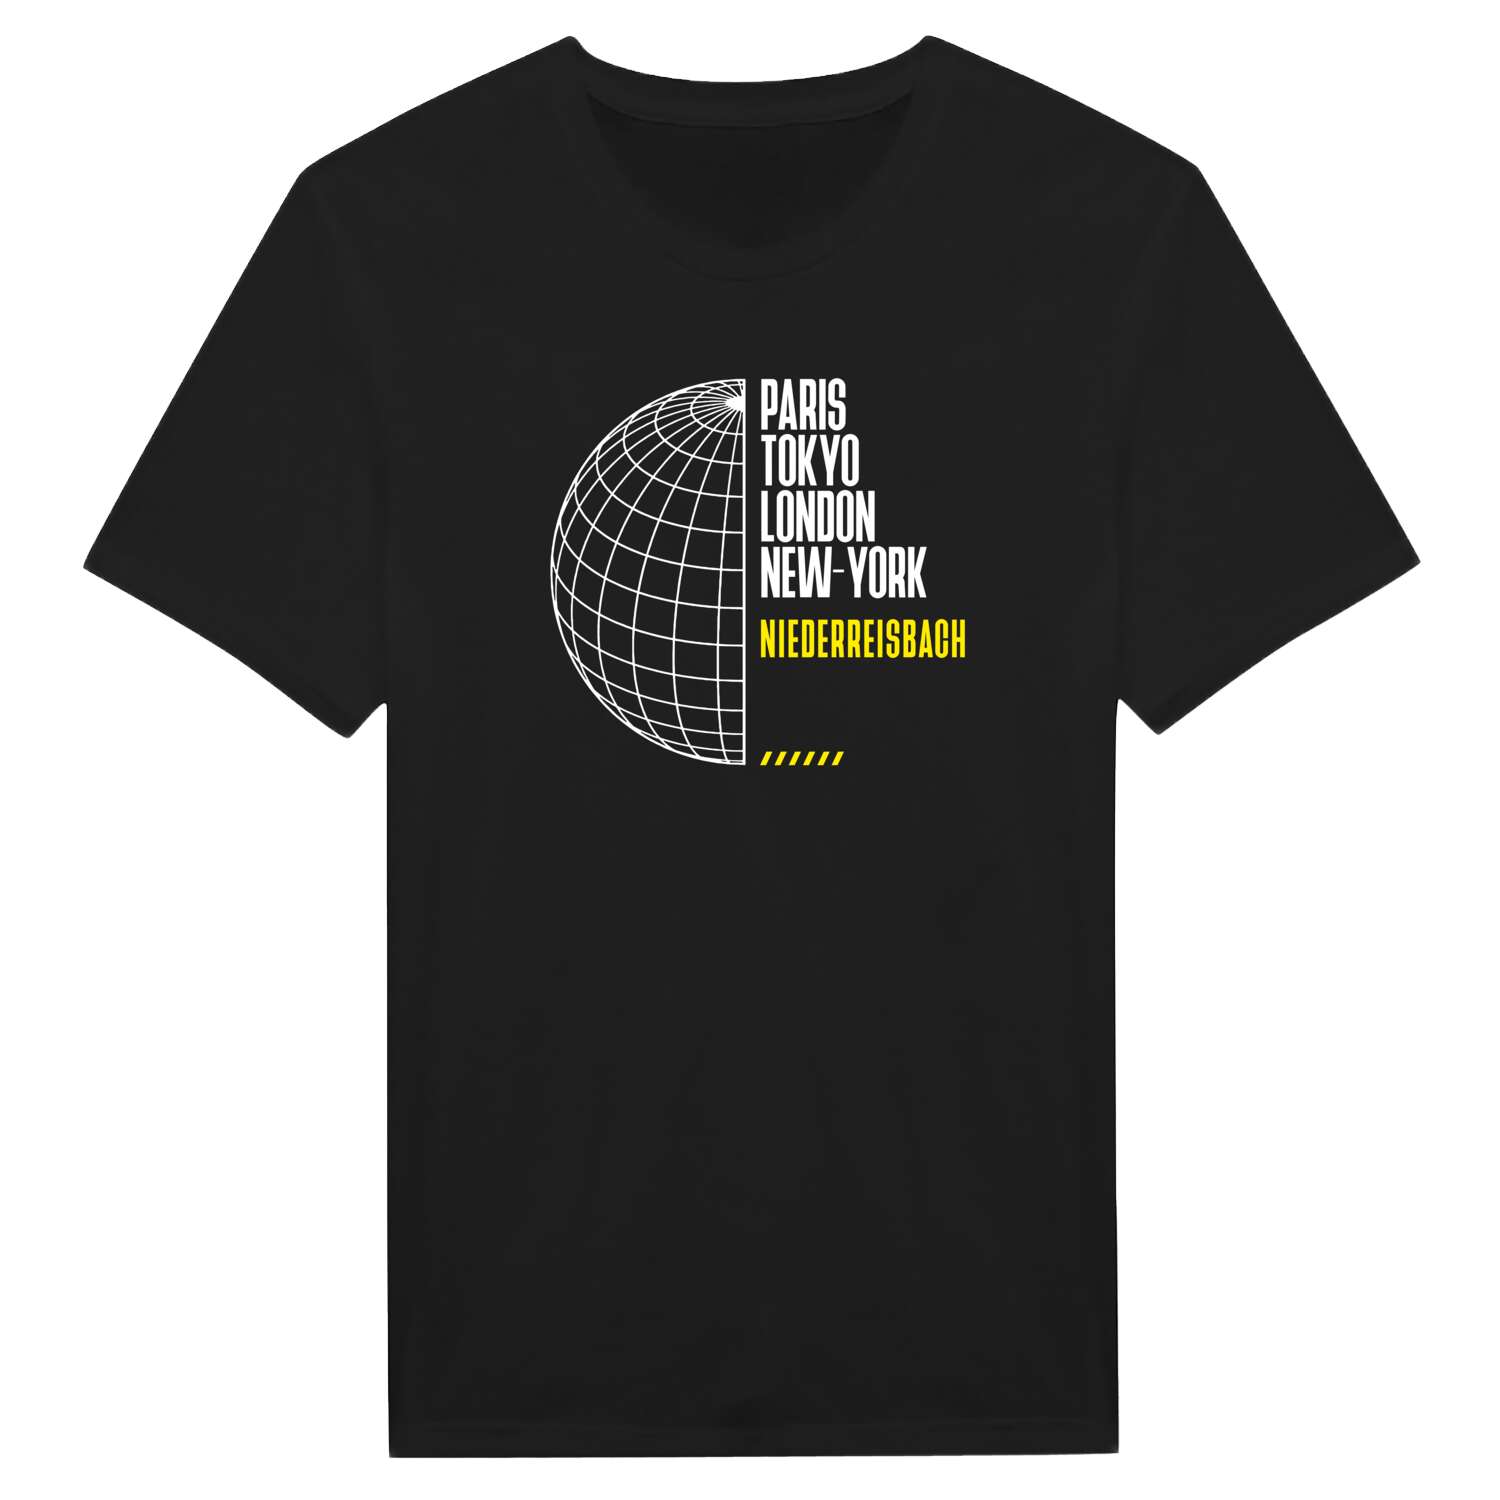 Niederreisbach T-Shirt »Paris Tokyo London«